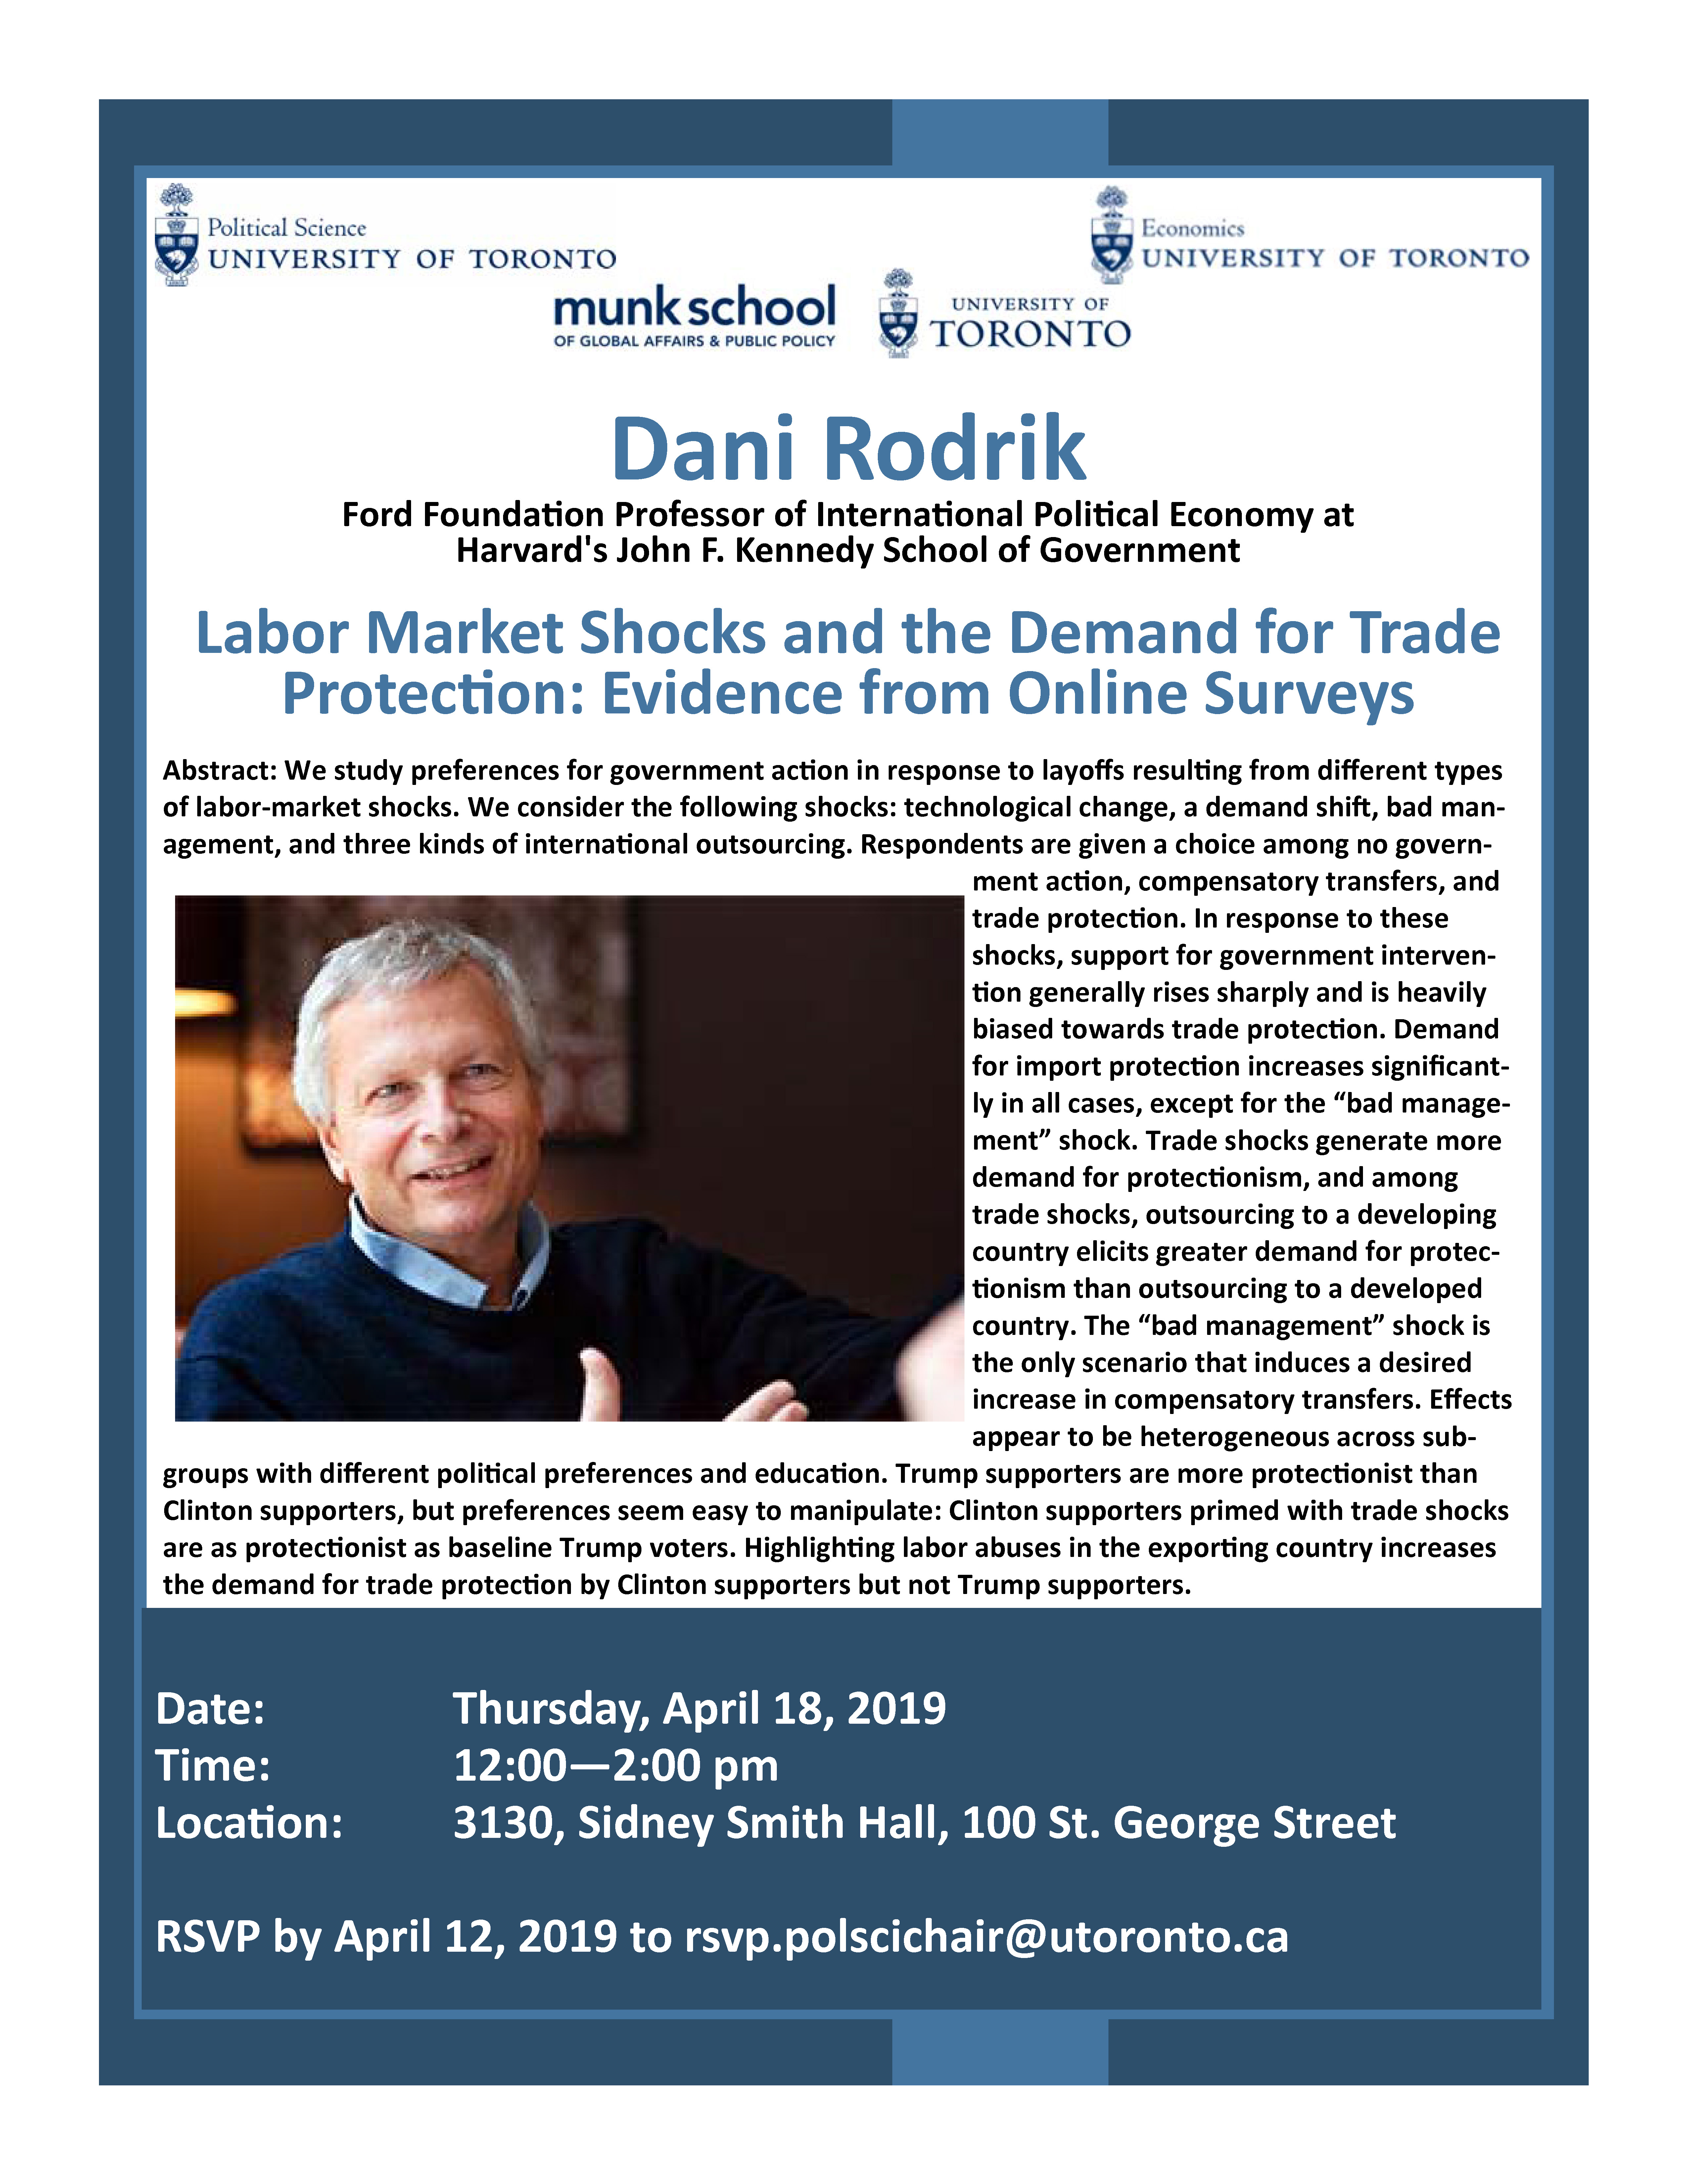 Professor Dani Rodrik seminar poster